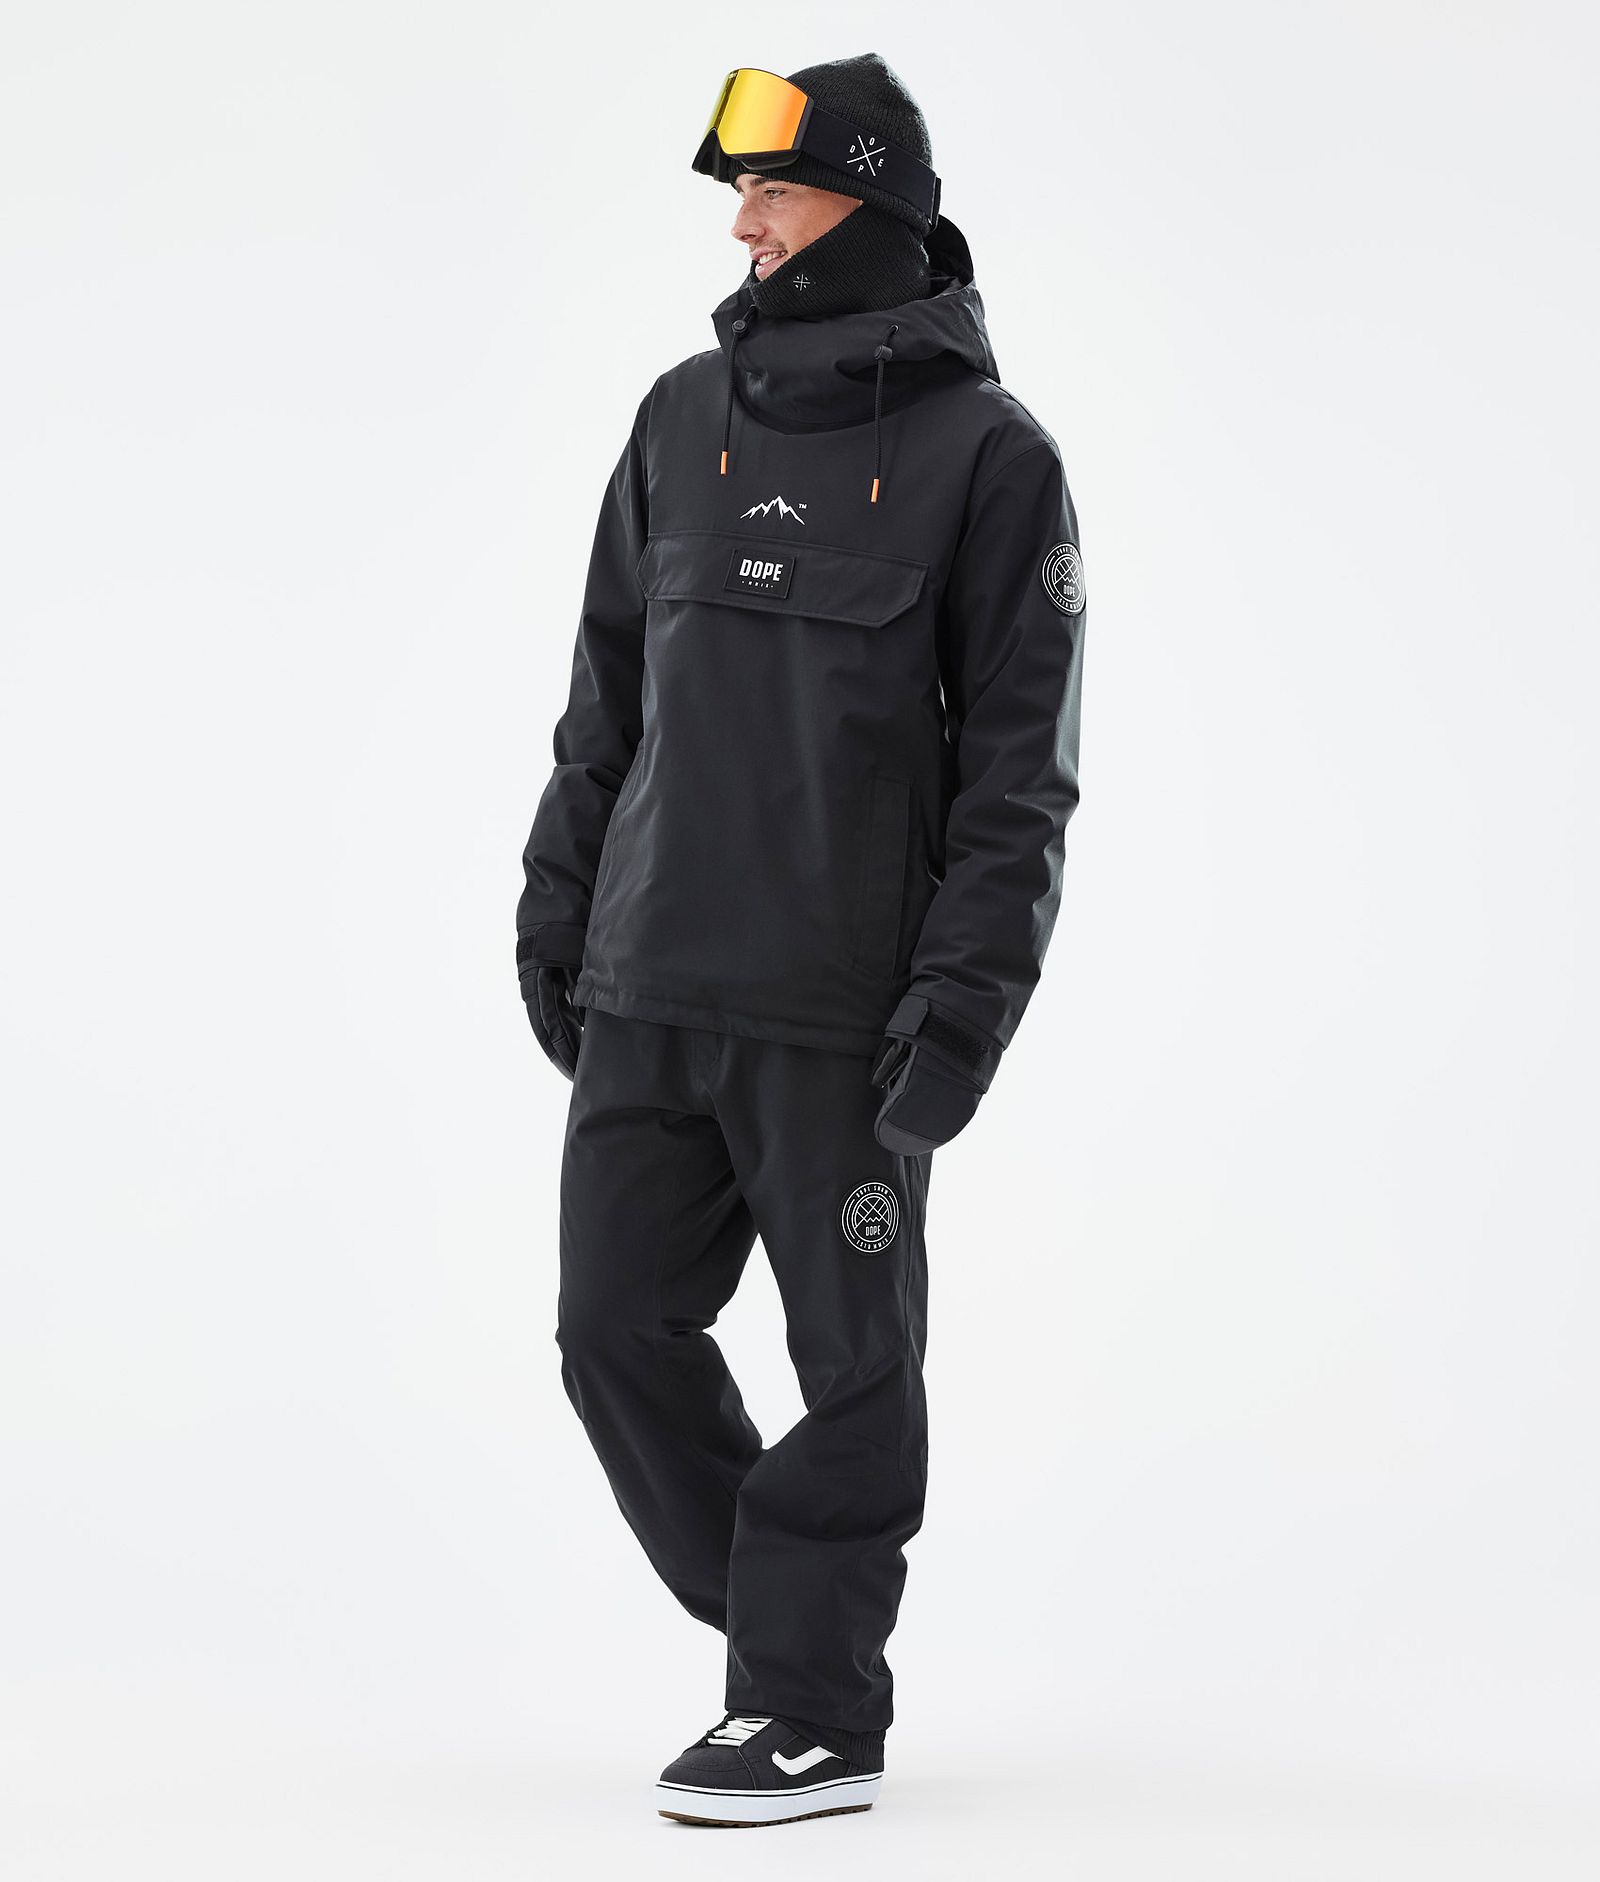 Dope Blizzard Snowboard Jacket Men Black, Image 2 of 8